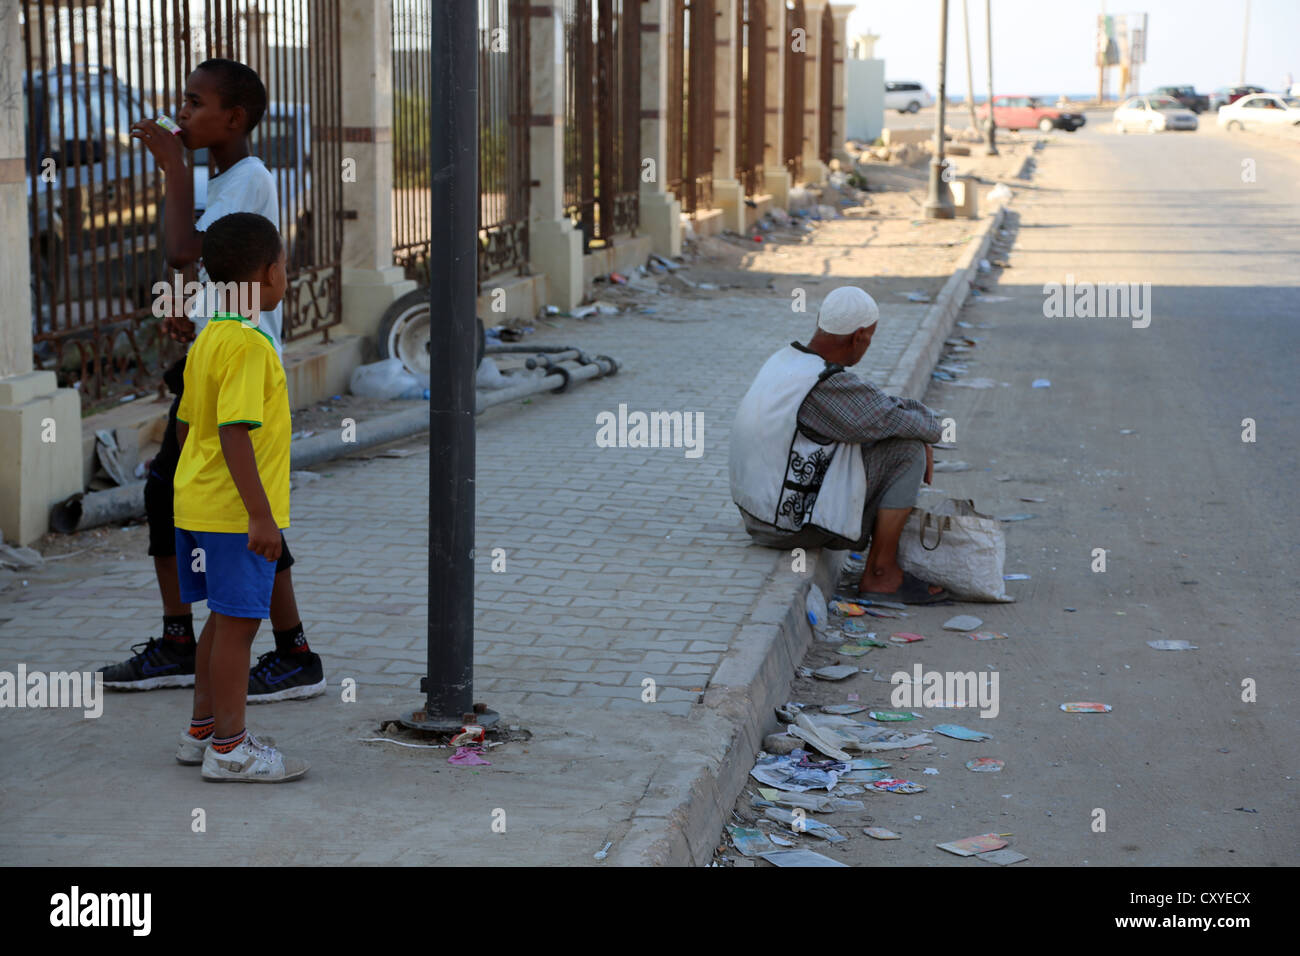 Libya, Benghazi, kids Stock Photo